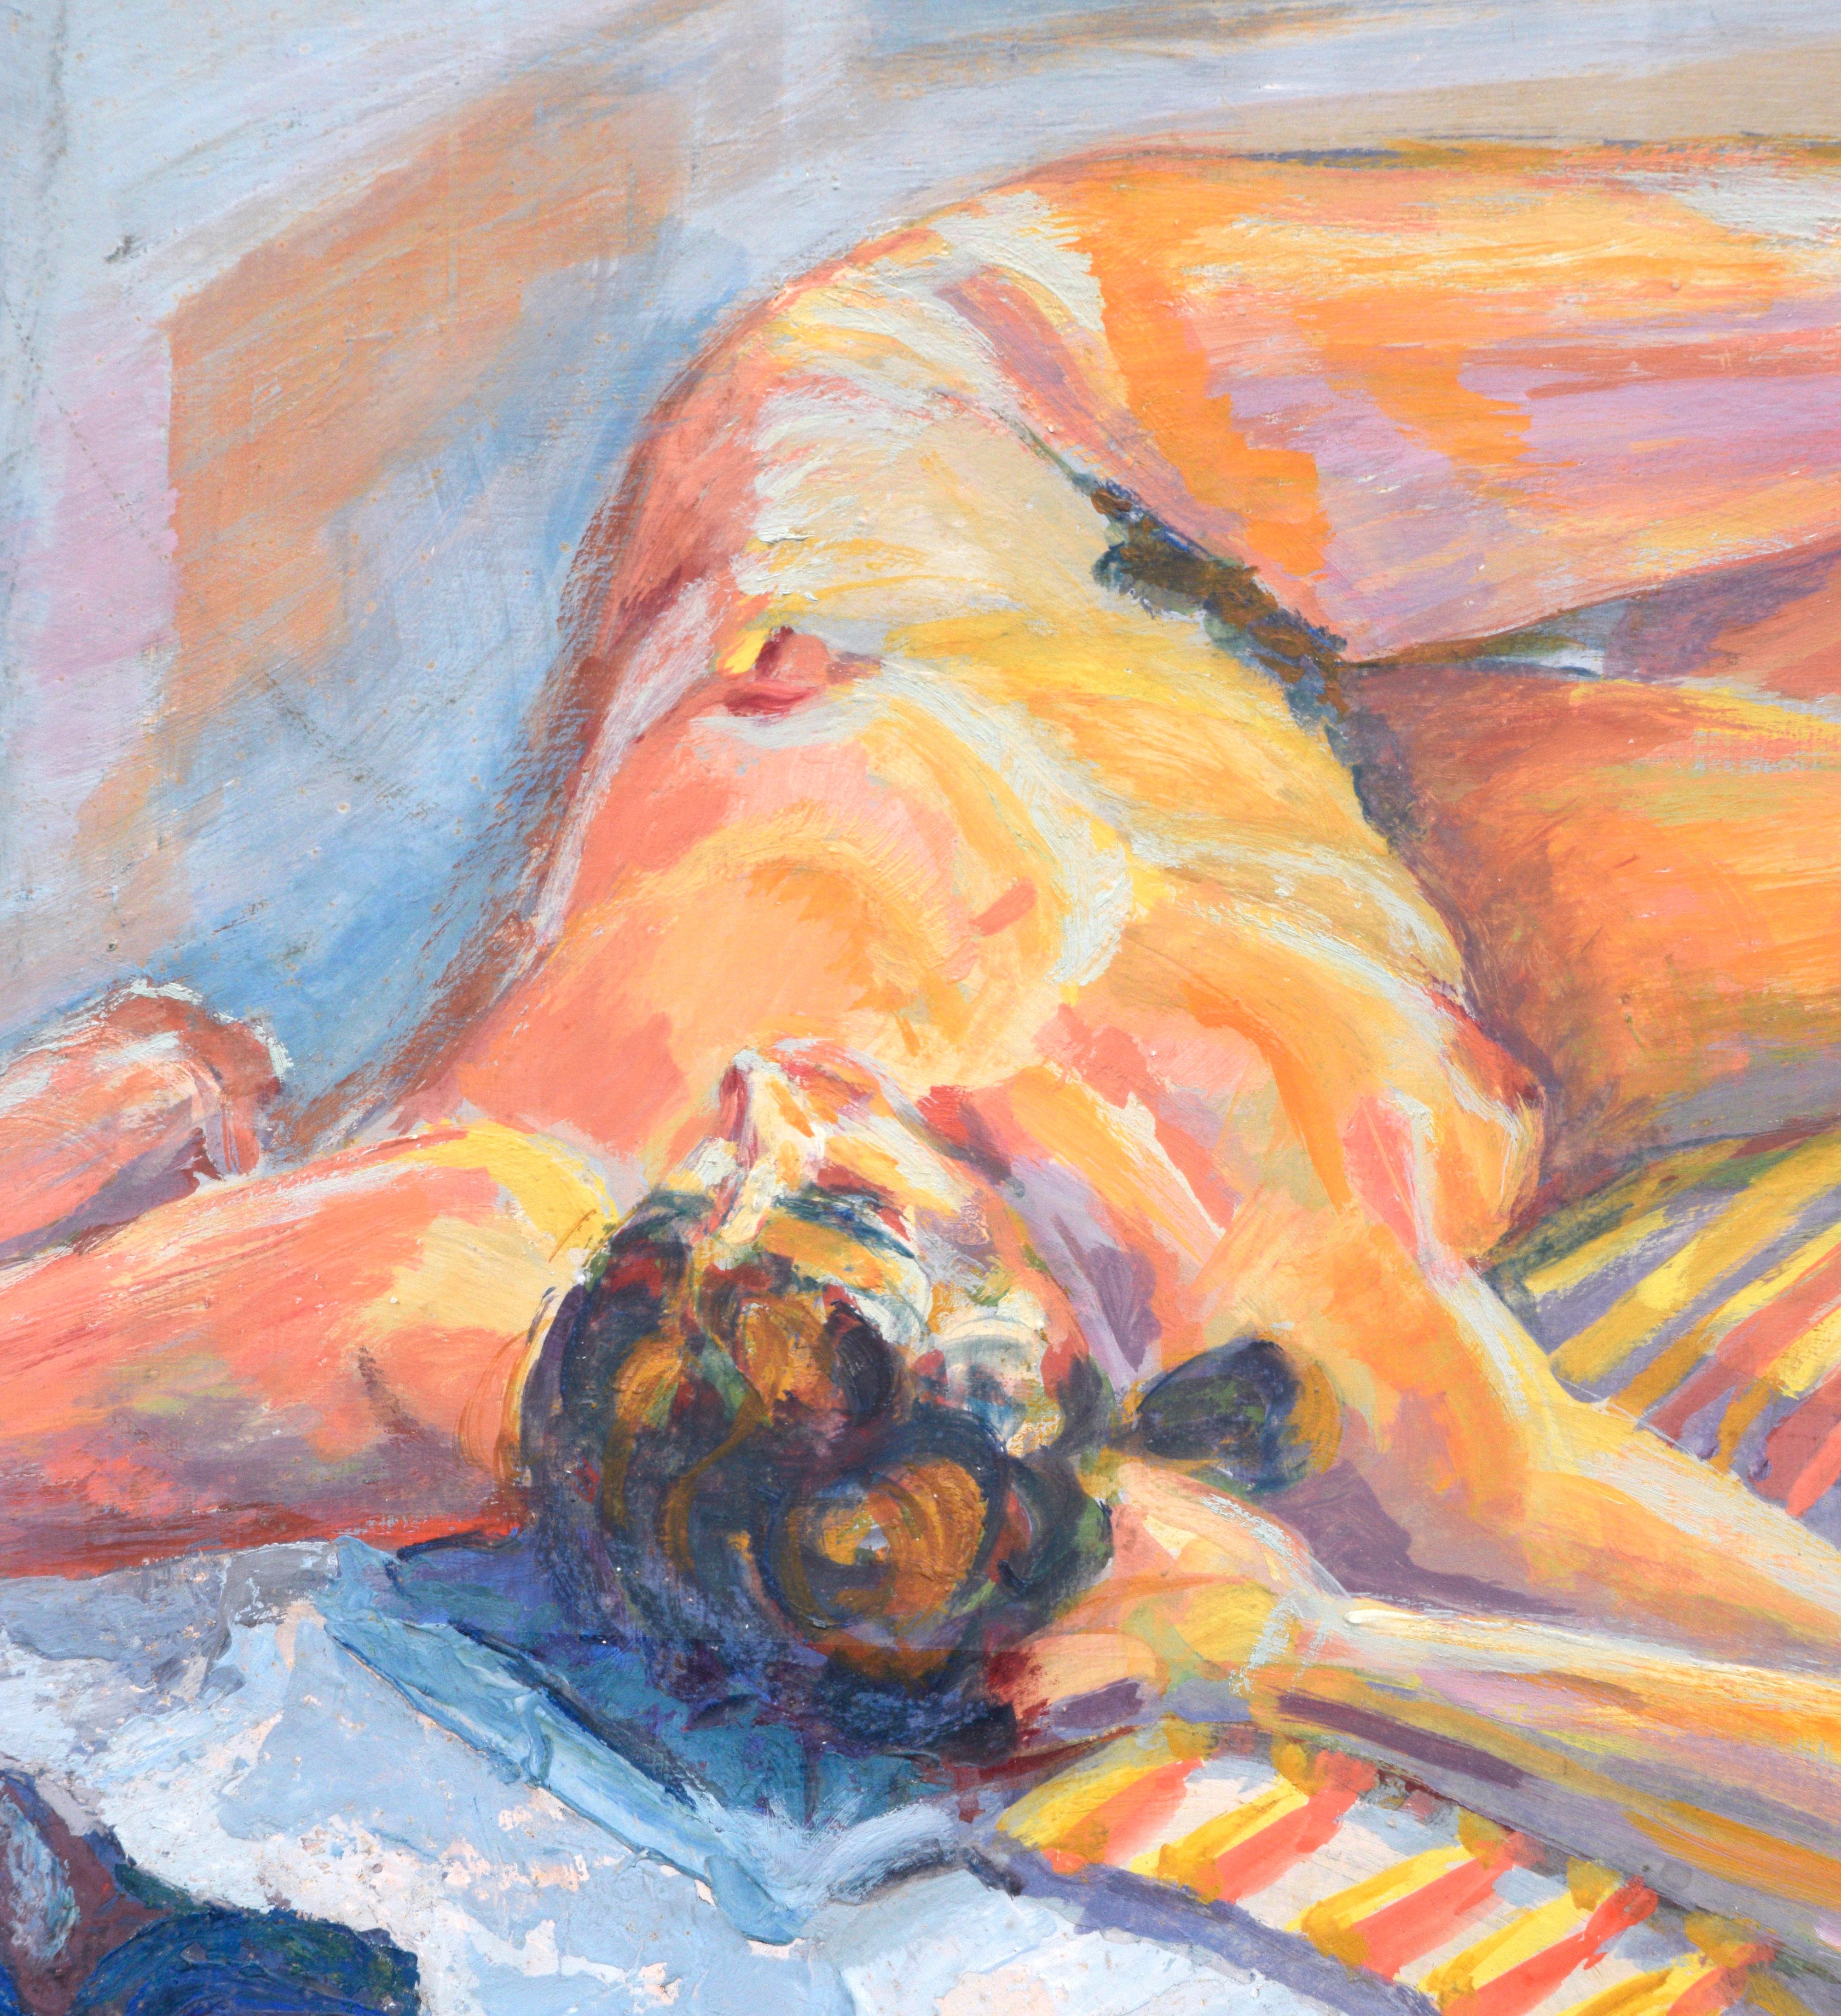 Liegender weiblicher Akt, figurativ, modernistischer Stil  (Amerikanische Moderne), Painting, von Unknown